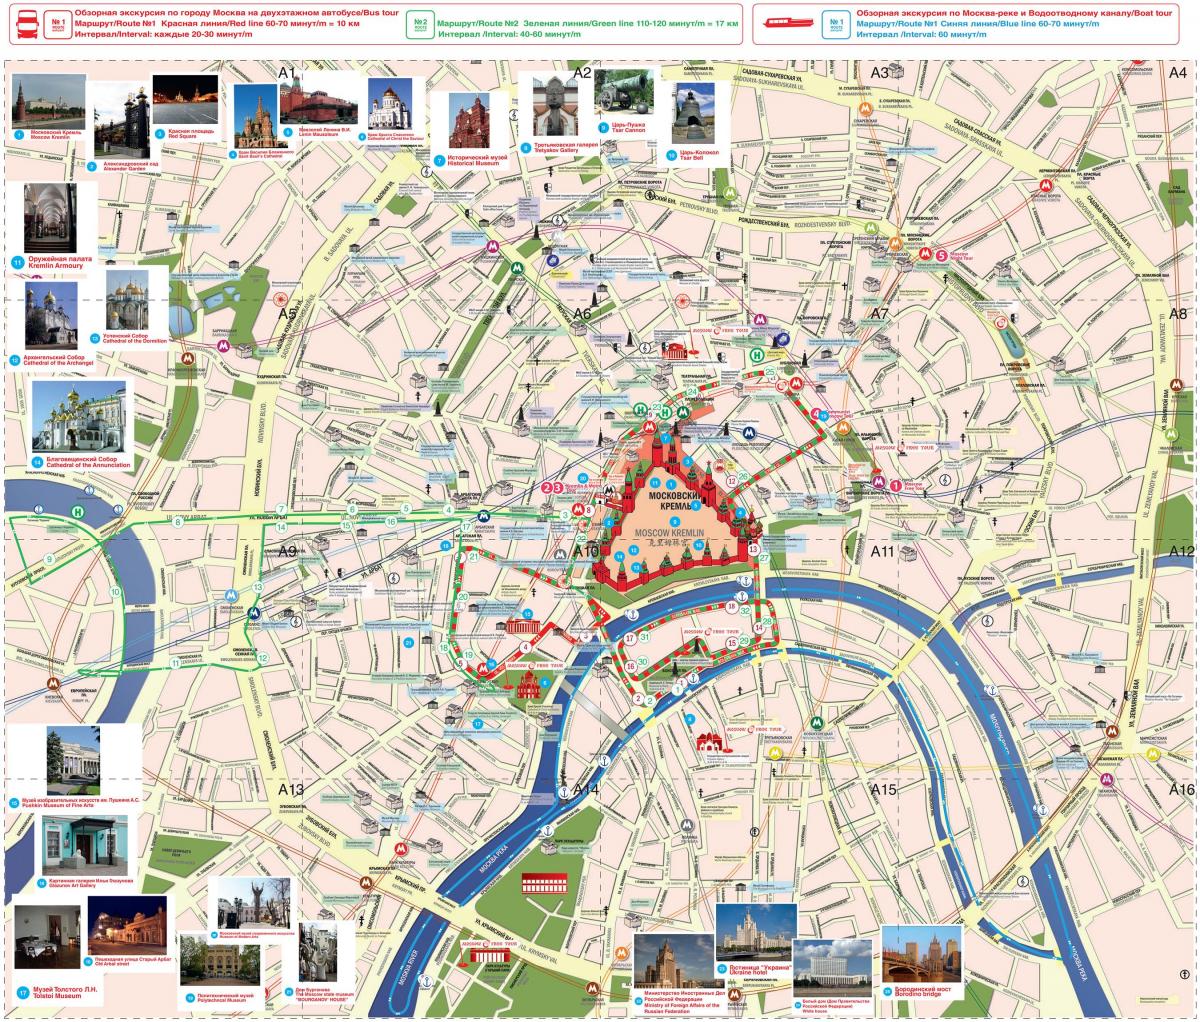 Moscow hop sa hop-off bus ruta ng mapa